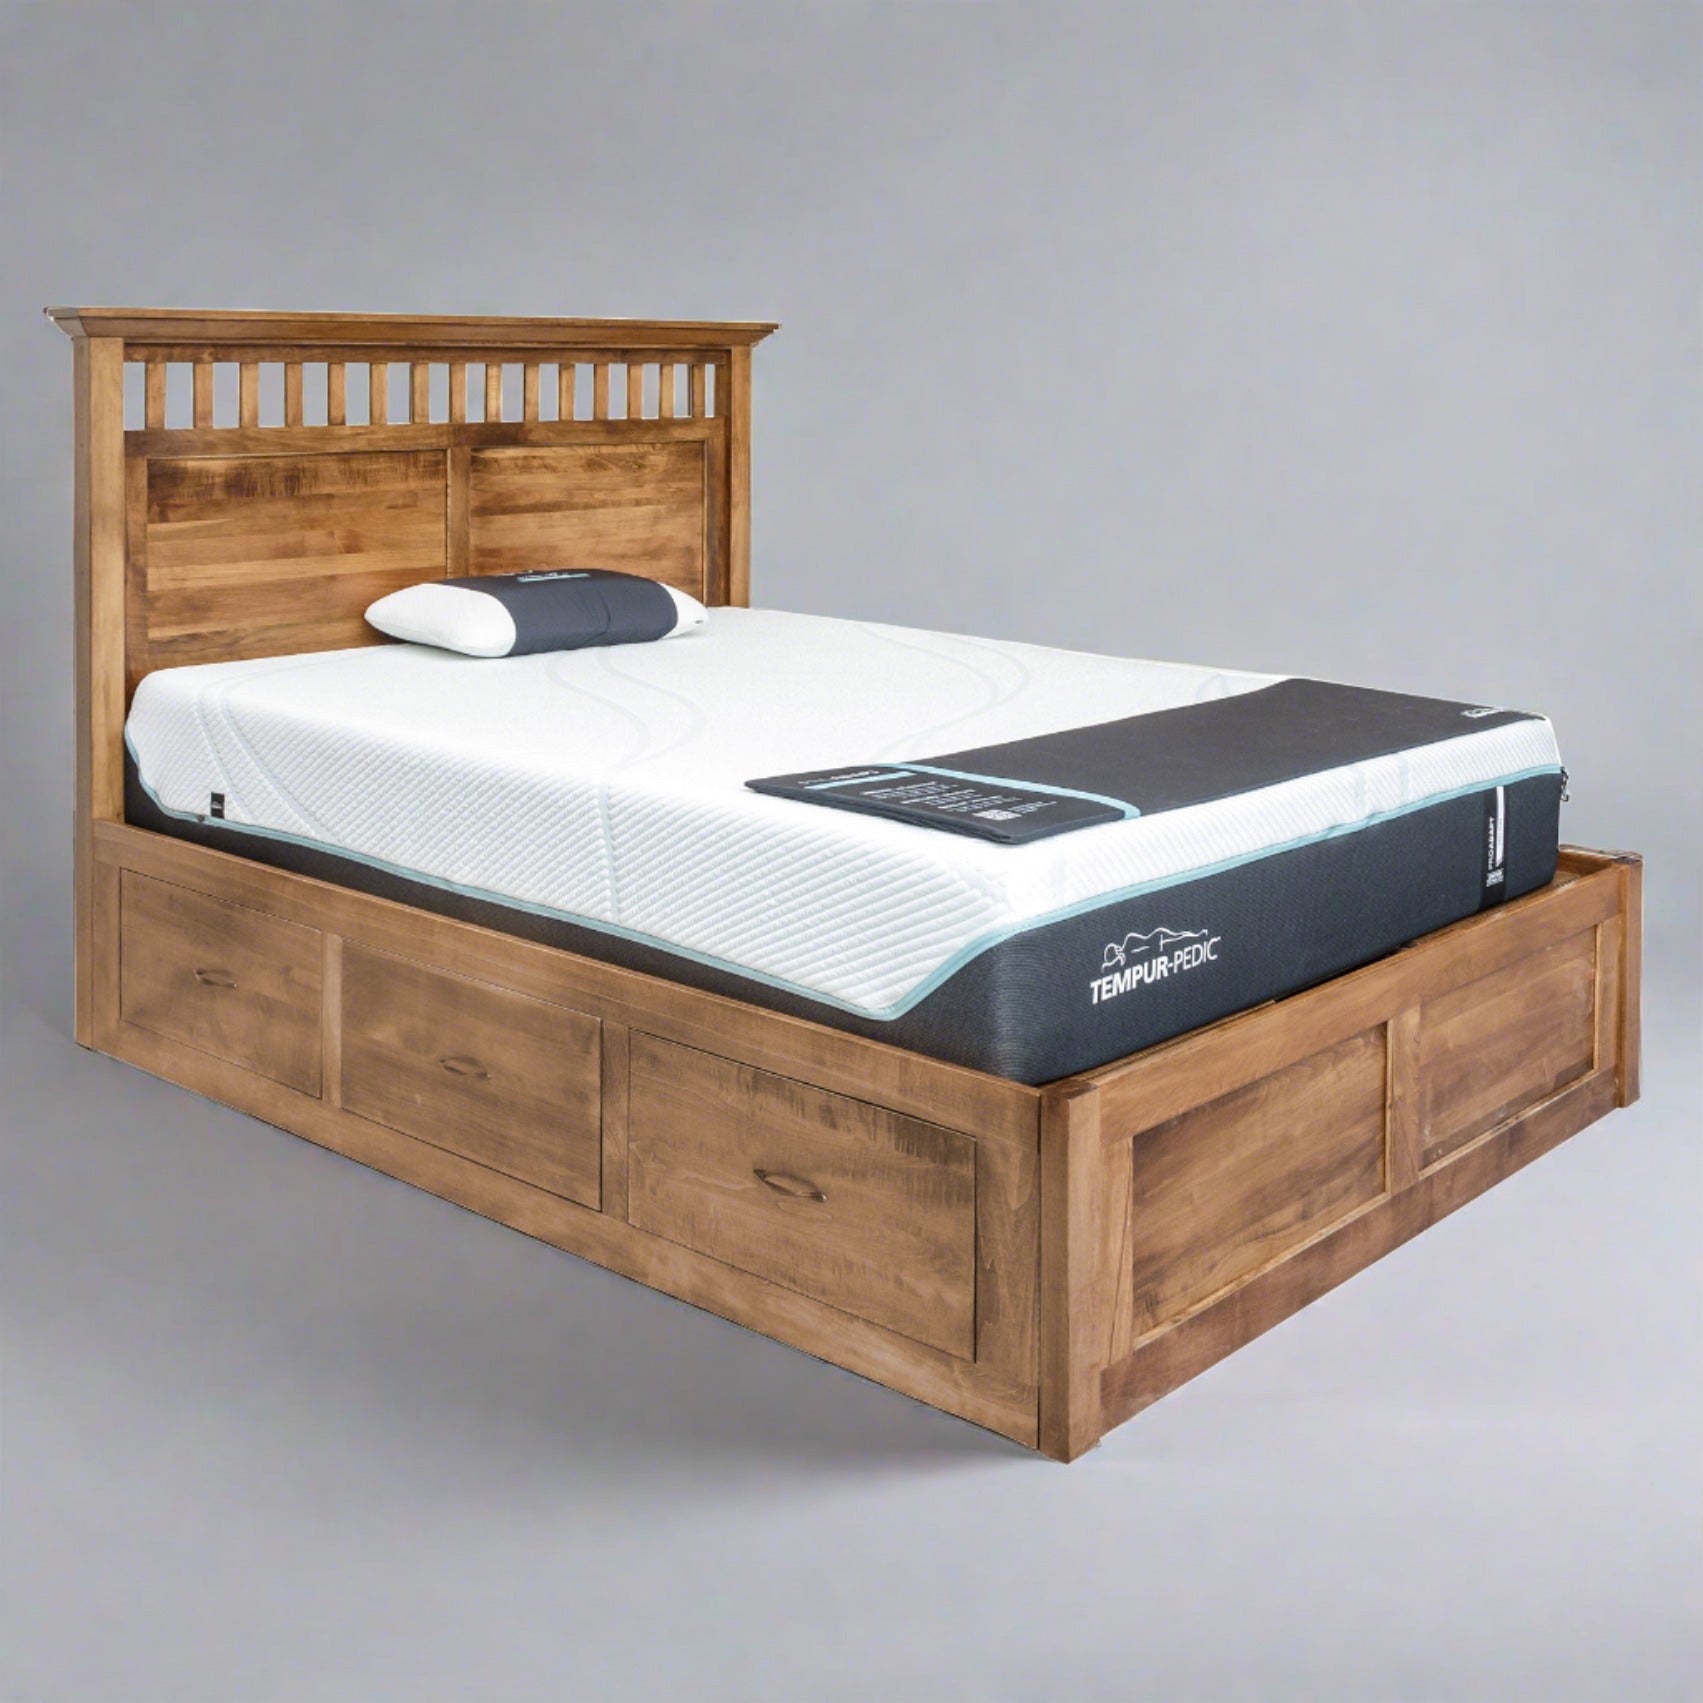 Eden Amish Shaker Platform Bed - snyders.furniture